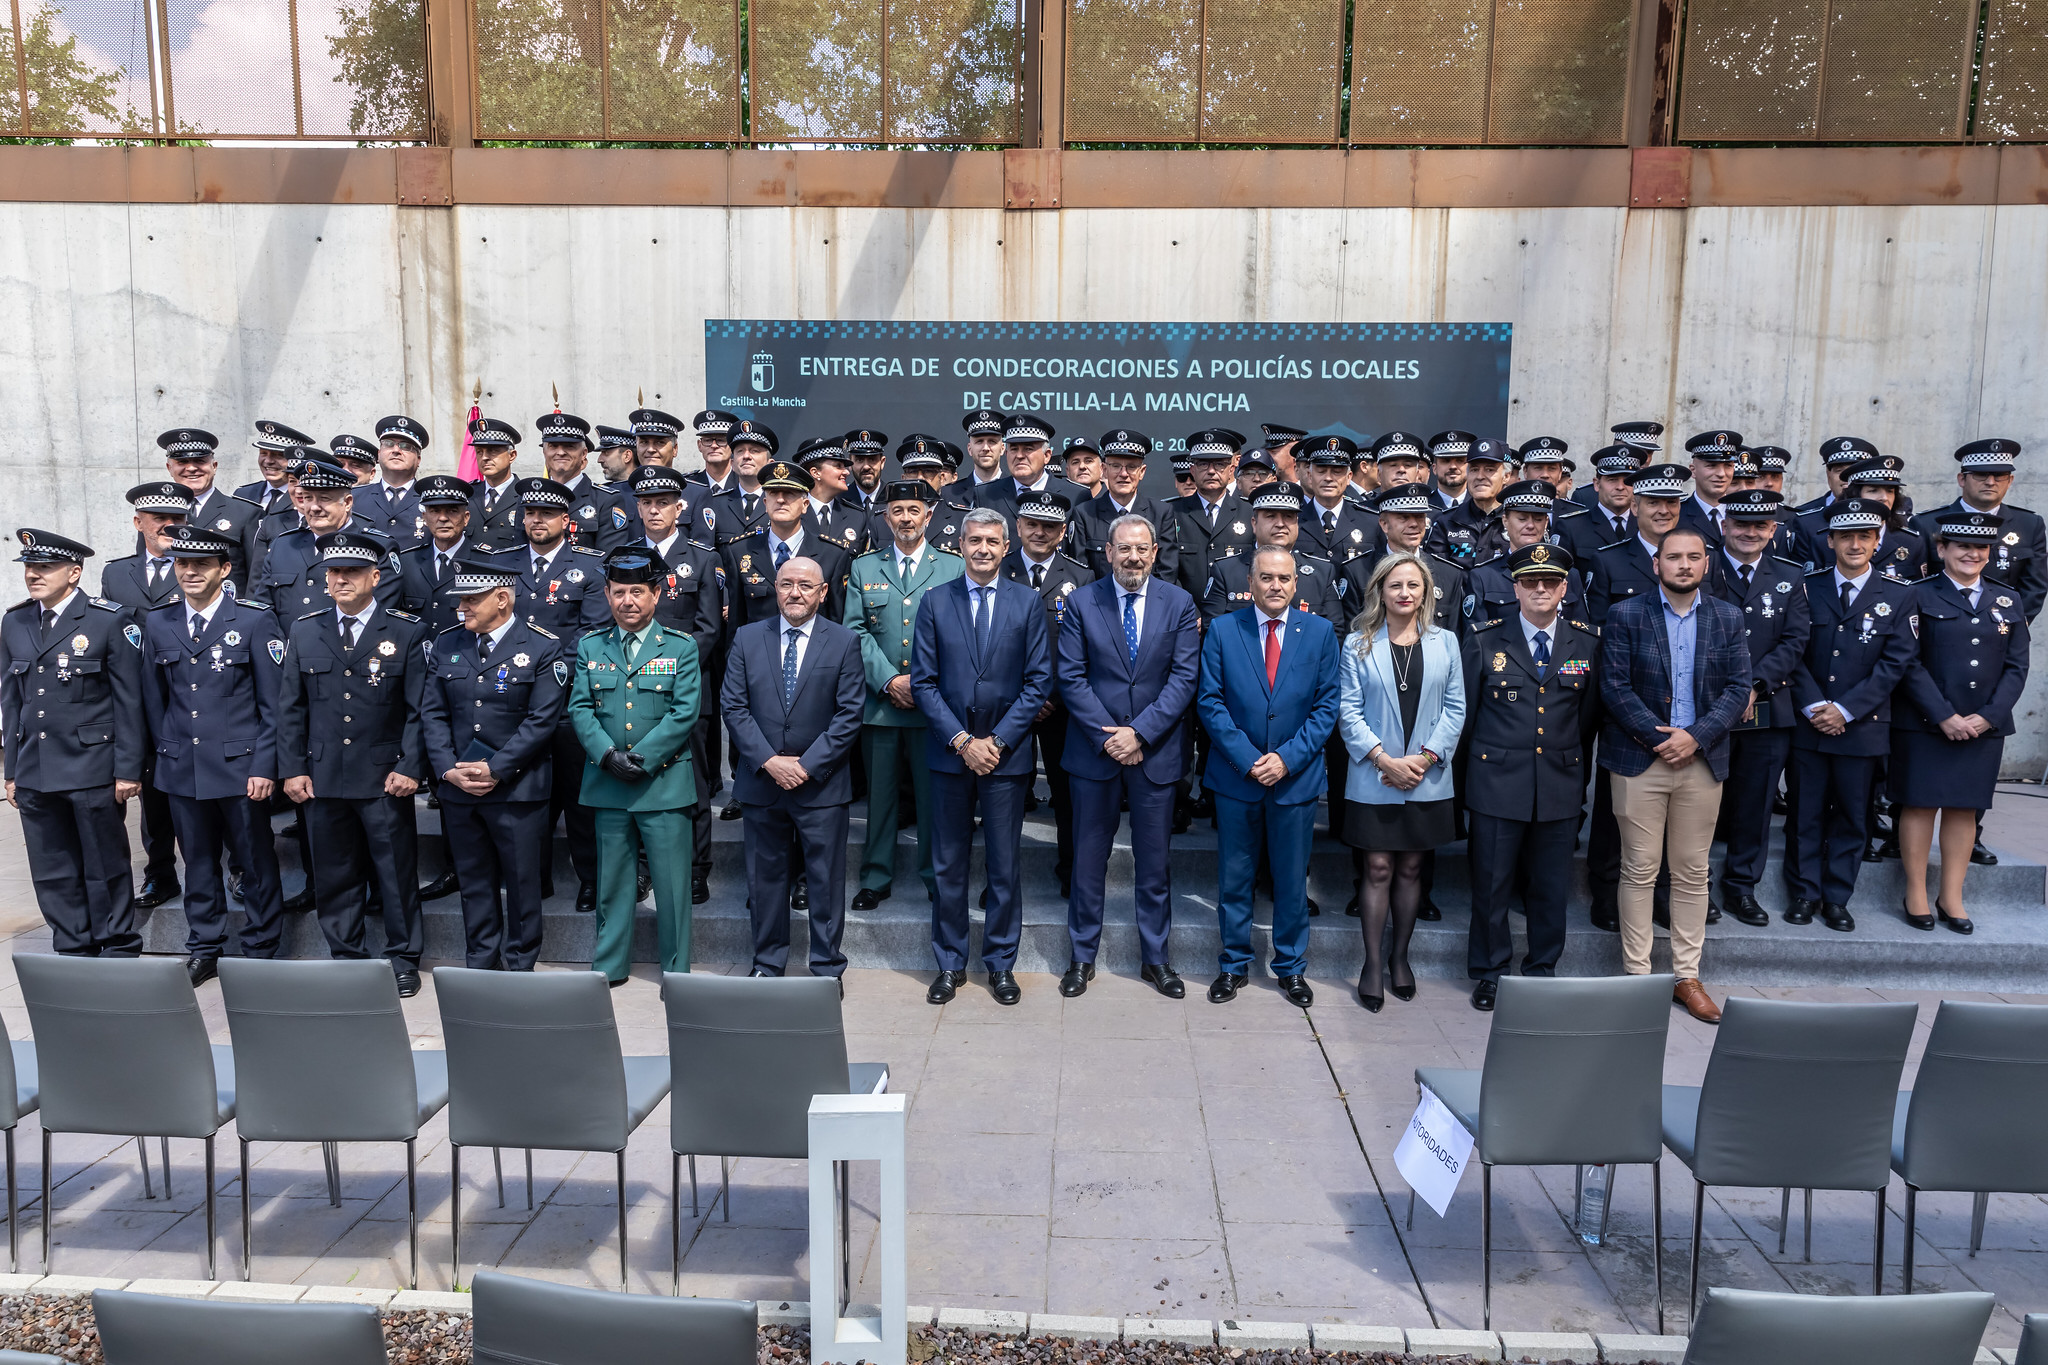 El Gobierno de Castilla-La Mancha reconoce la dedicación de la Policía Local para proteger los derechos y libertades de la ciudadanía los 365 días del año